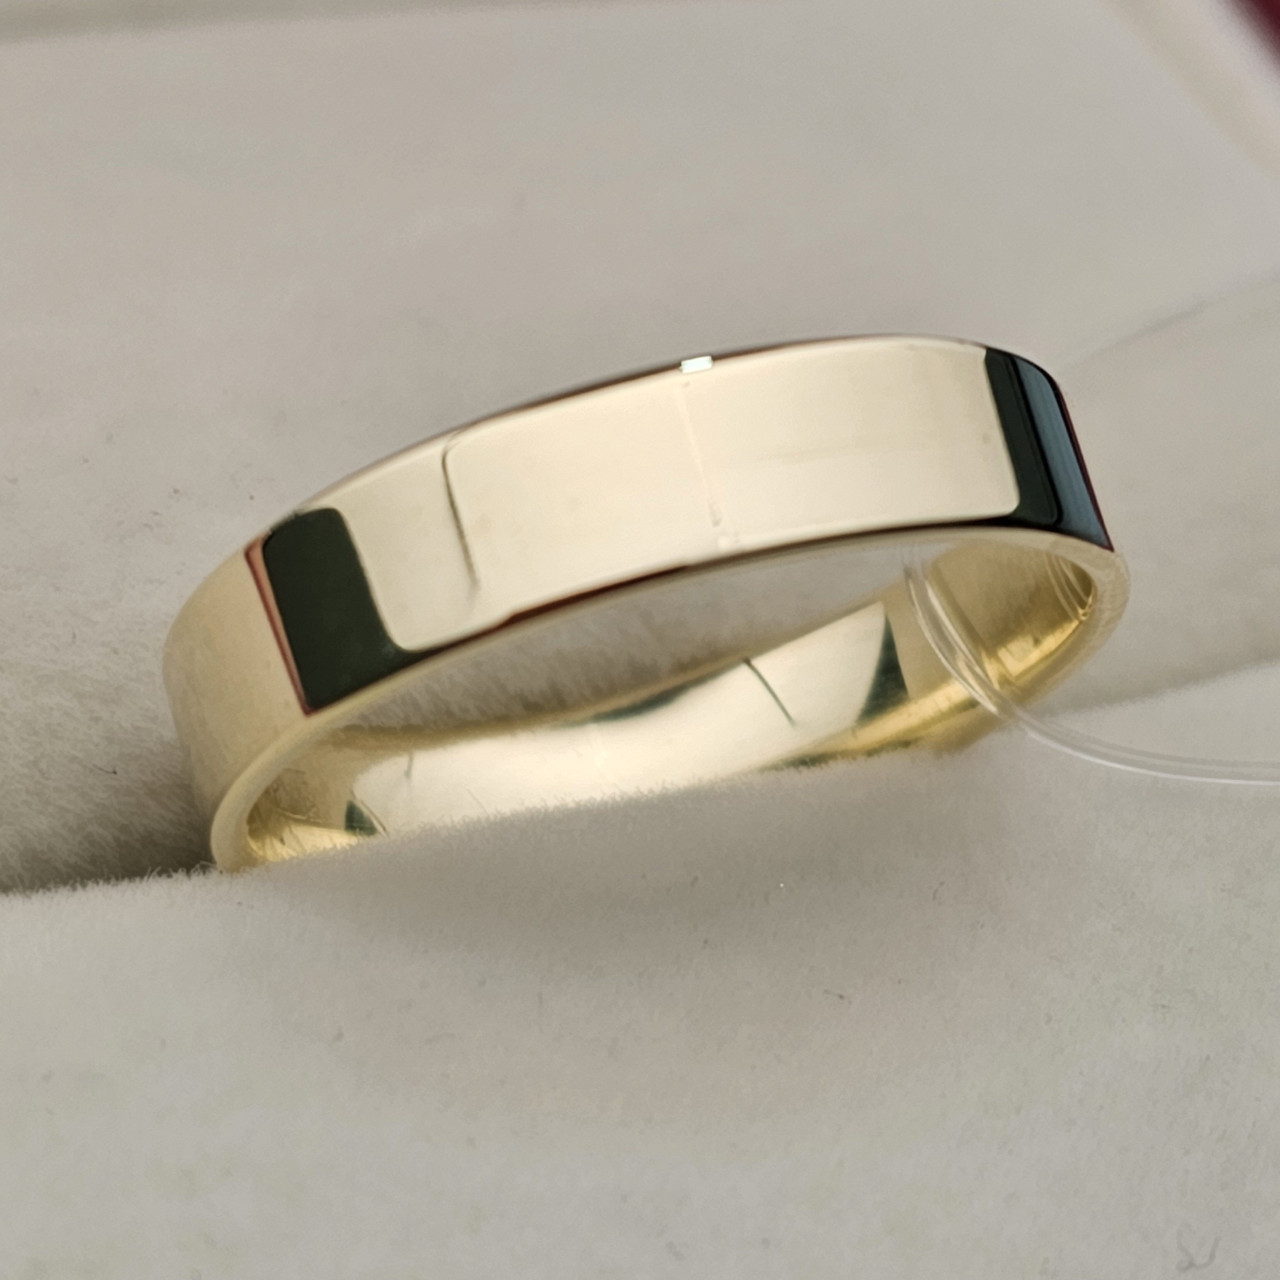 Обручальное кольцо 2.9 гр, размер 19/4мм Желтое золото 585 проба